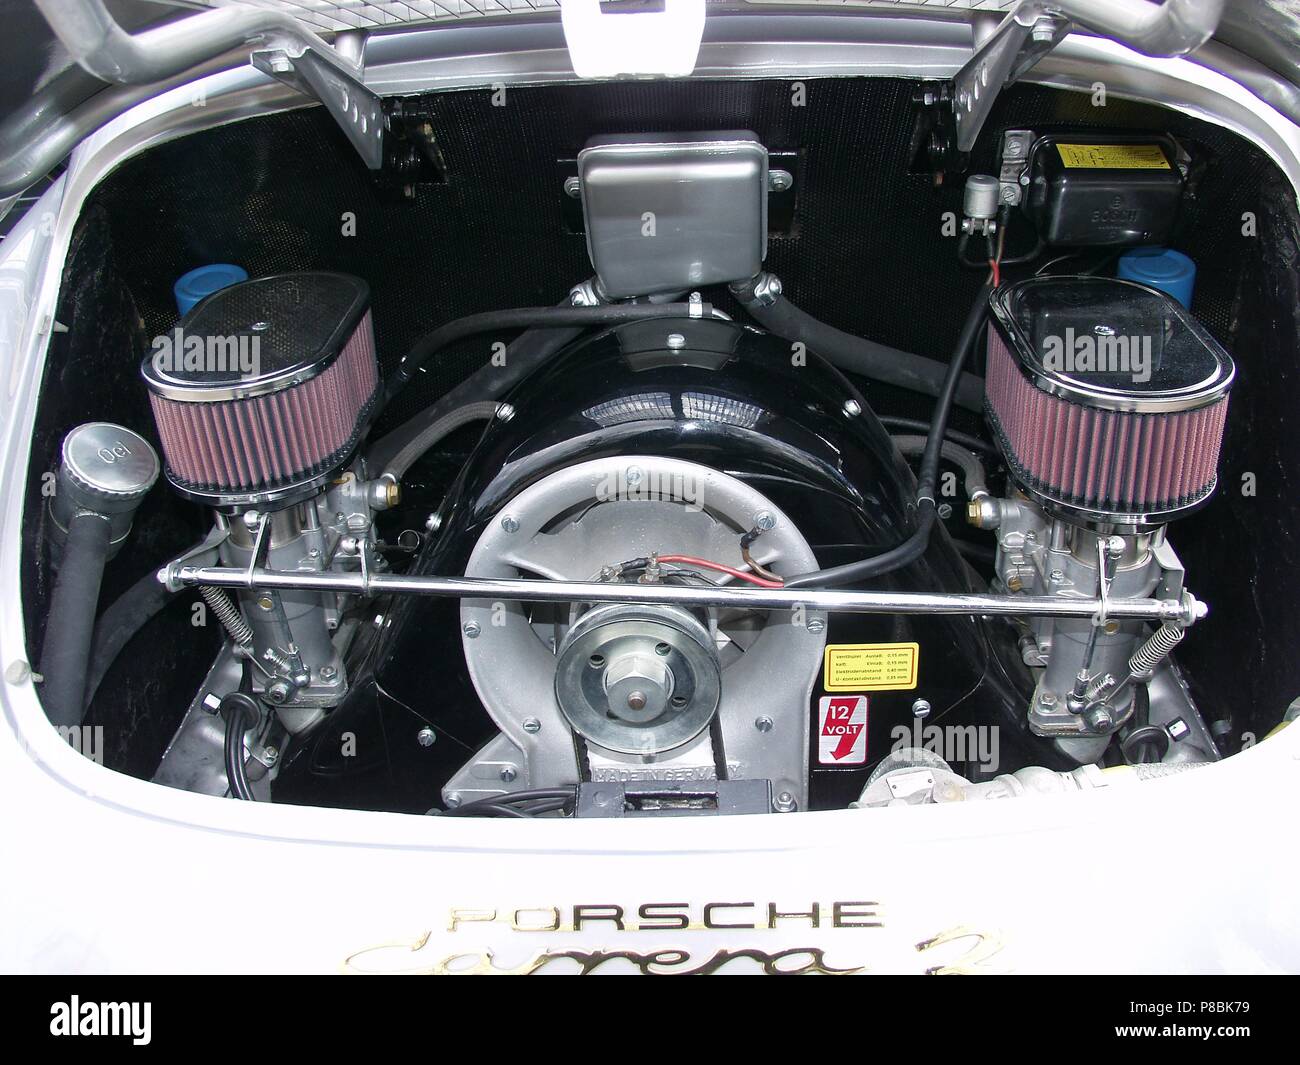 Motore da corsa porsche immagini e fotografie stock ad alta risoluzione -  Alamy